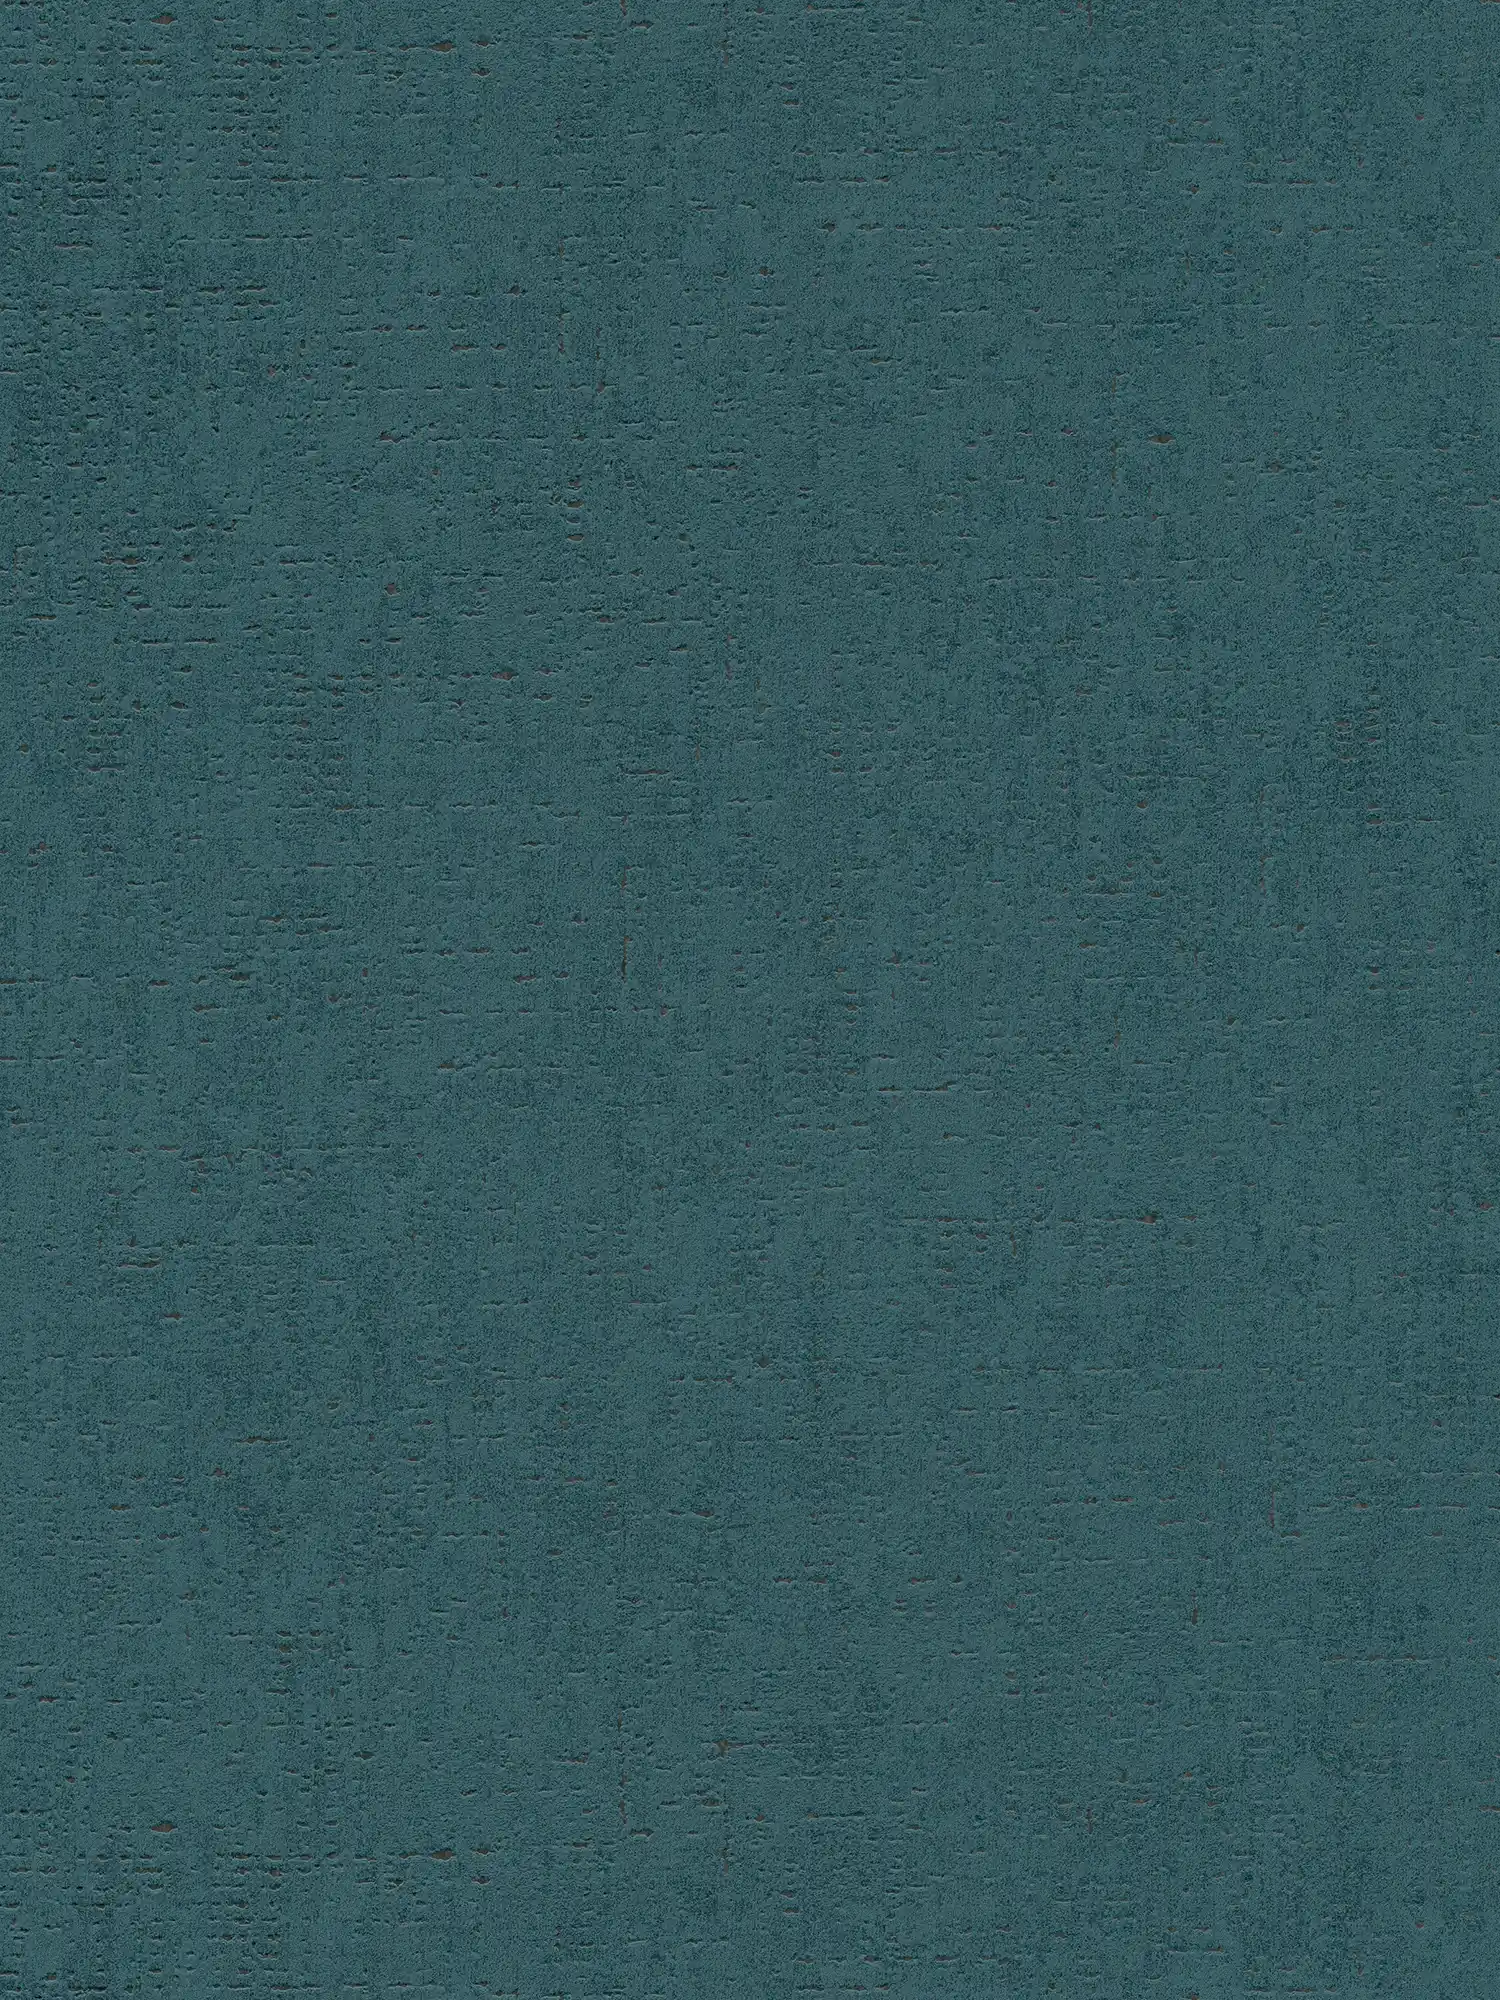 Carta da parati color petrolio con struttura a chiazze - blu, verde
